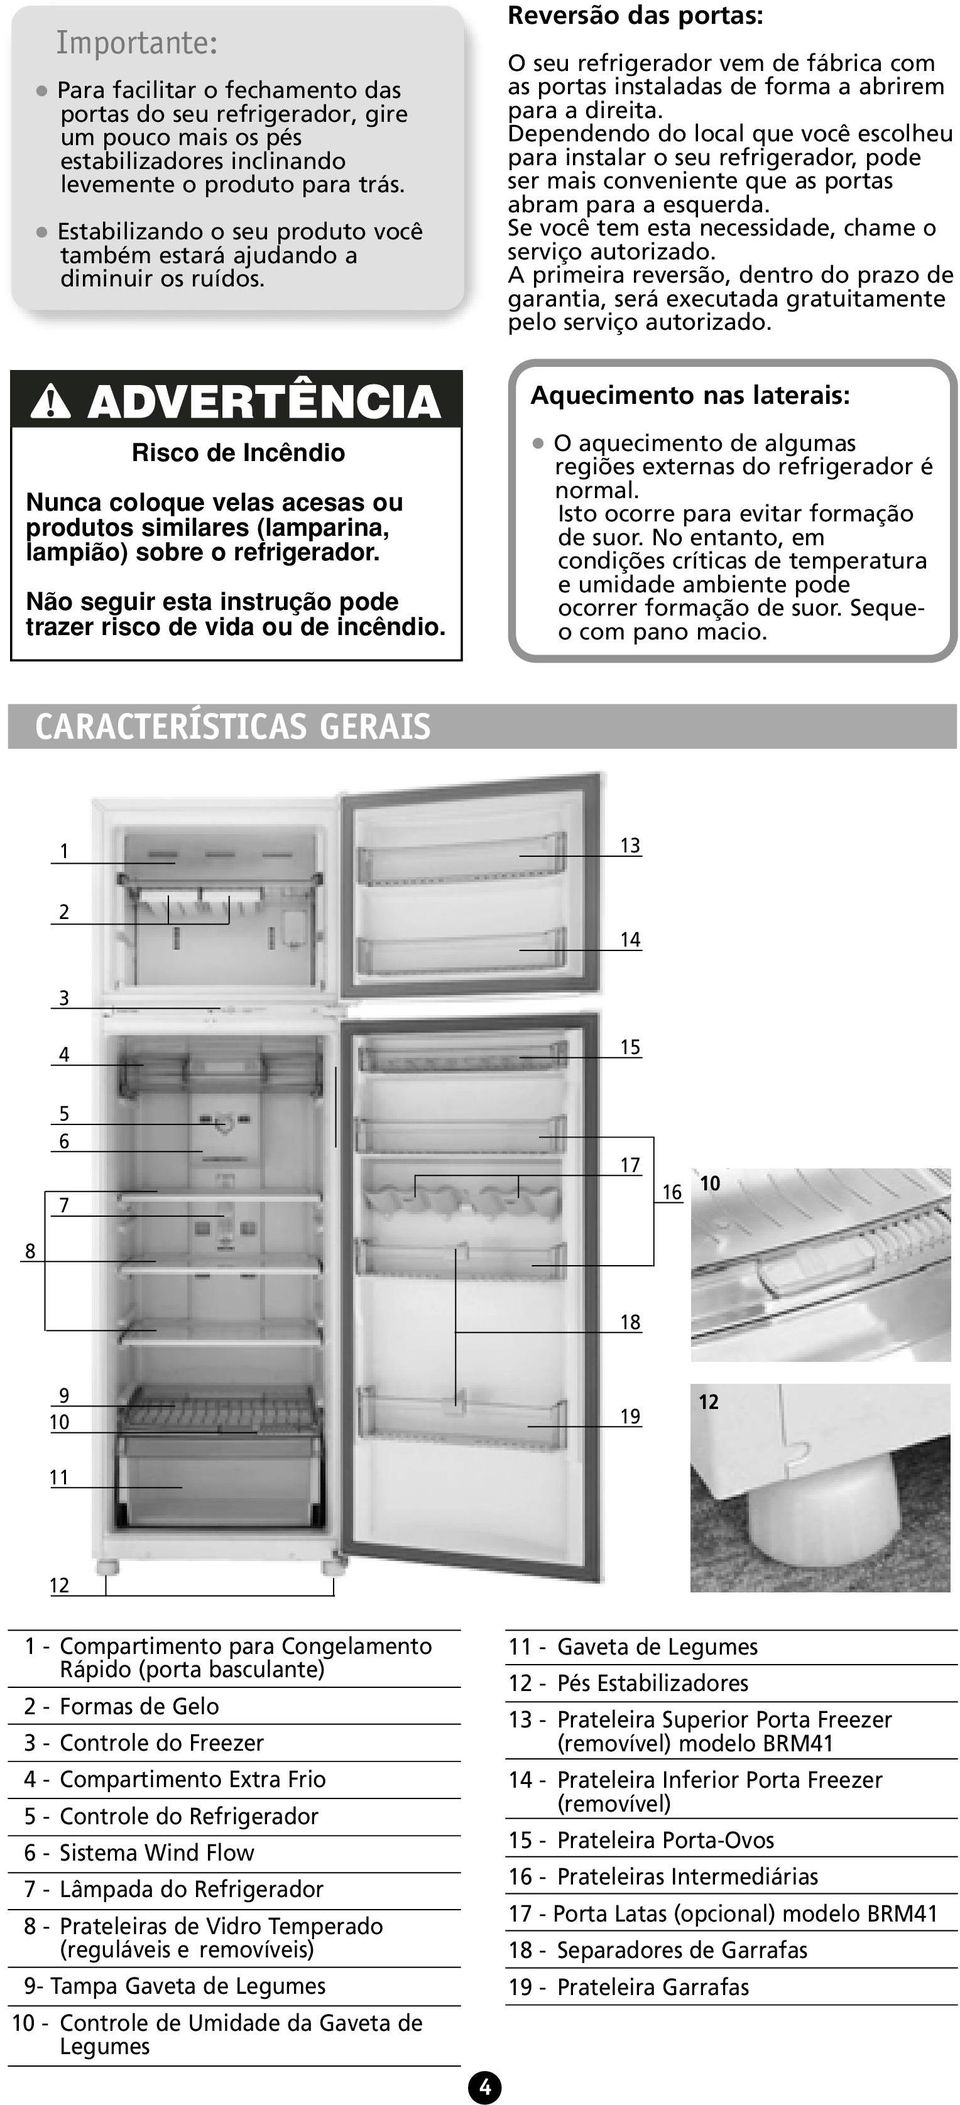 Dependendo do local que você escolheu para instalar o seu refrigerador, pode ser mais conveniente que as portas abram para a esquerda. Se você tem esta necessidade, chame o serviço autorizado.